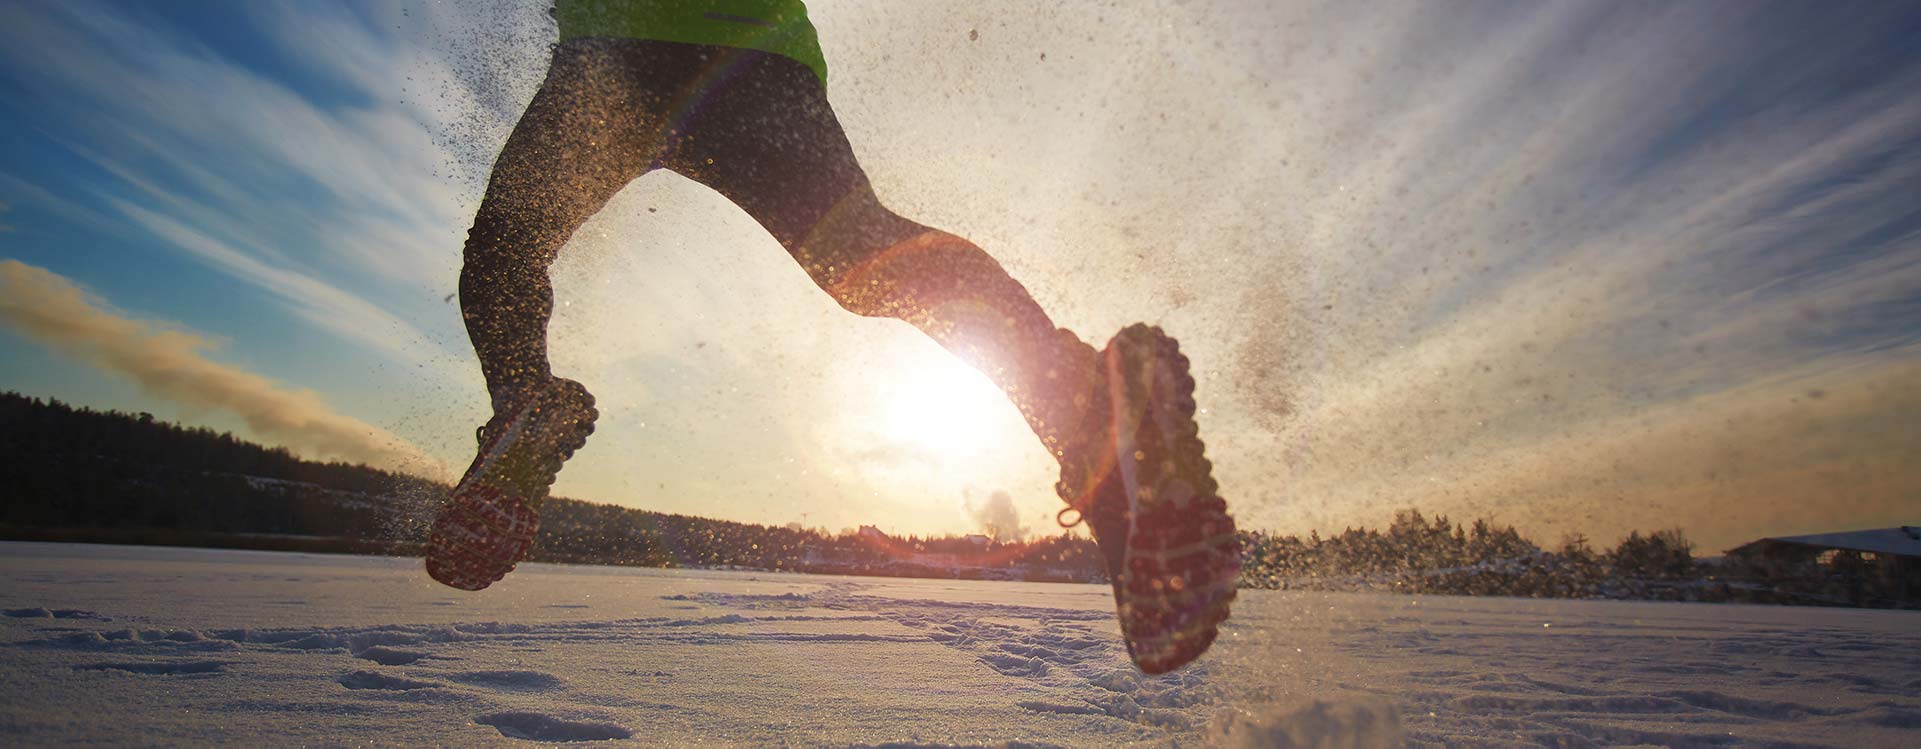 un uomo che corre sulla neve indicata la costanza nell'allenamento e perseveranza nell'attività